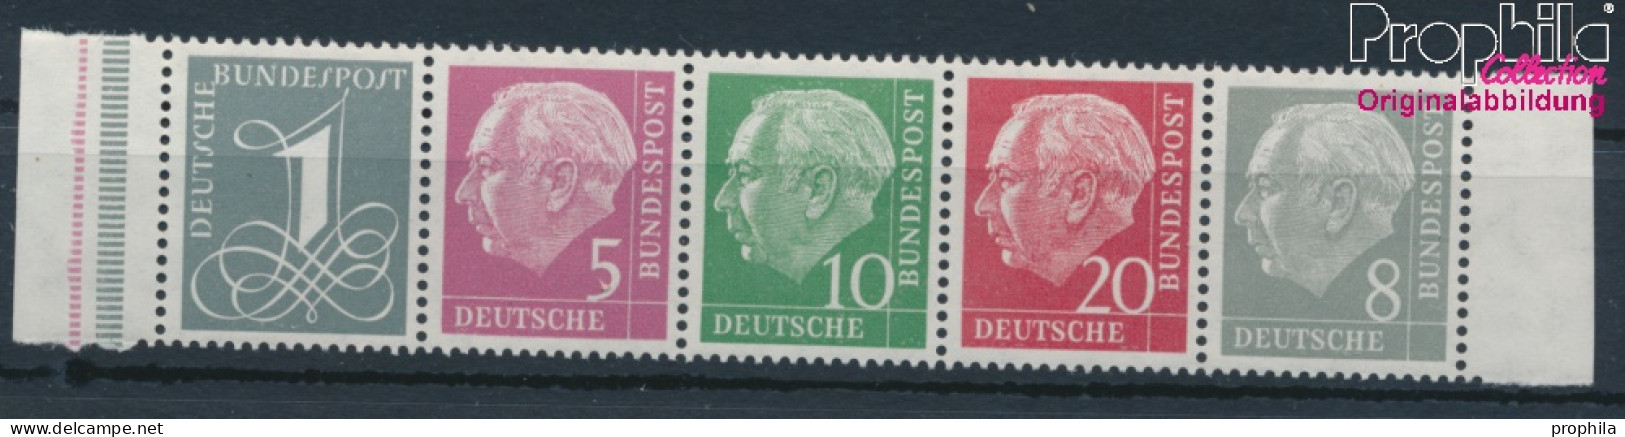 BRD 179Y,182Y,183Y,185Y,285Y (kompl.Ausg.) Liegendes Wasserzeichen Postfrisch 1960 Heuss I (10347828 - Neufs